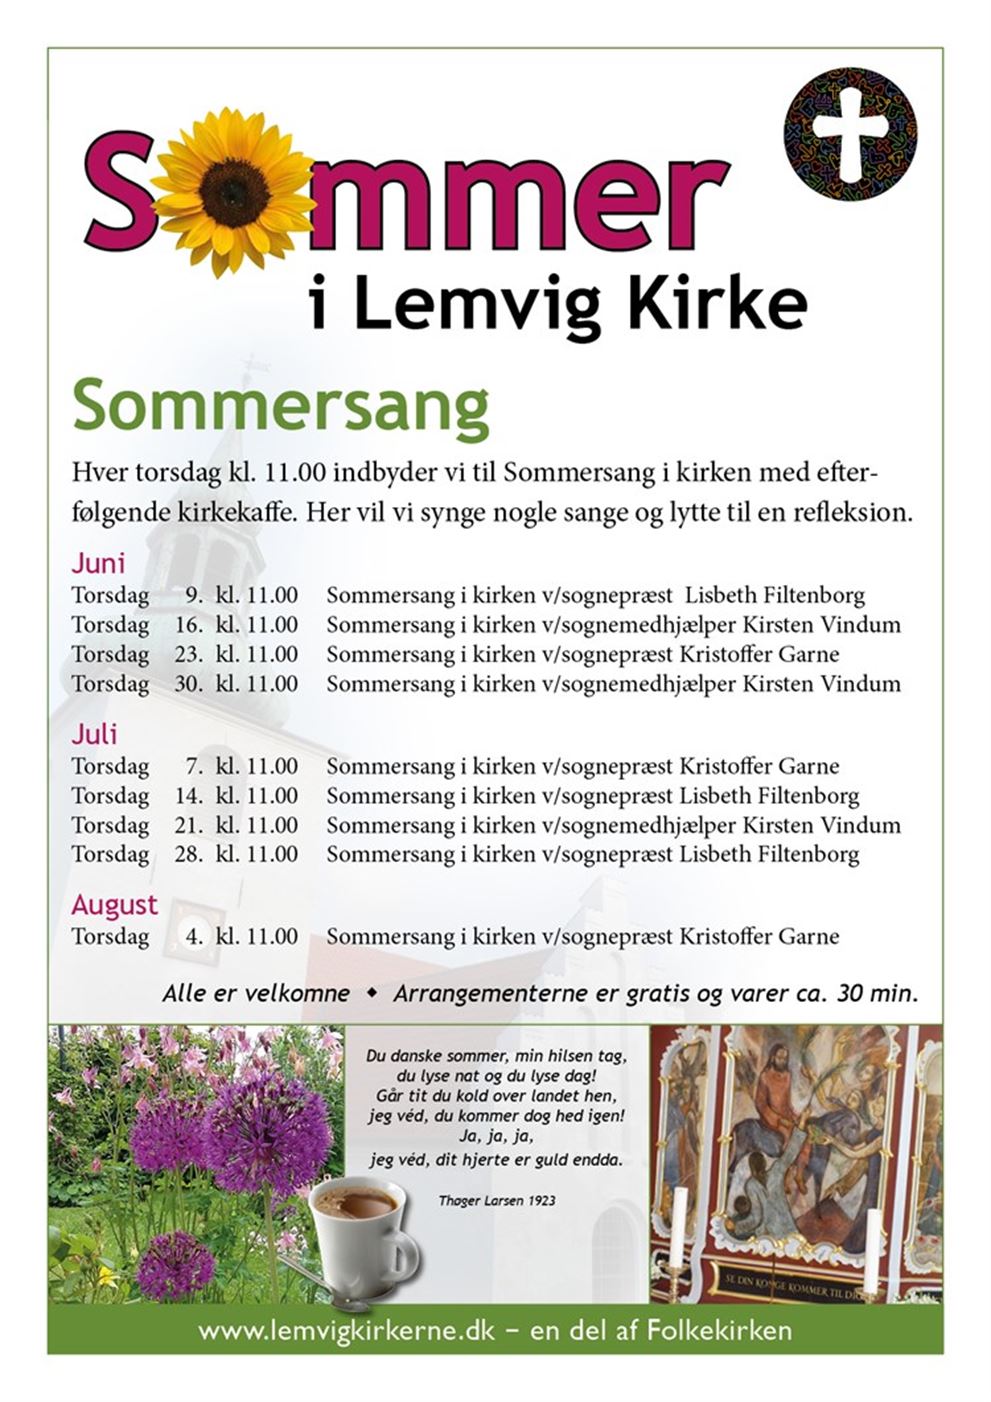 Sommersang Lemvig Kirke (21 juli)